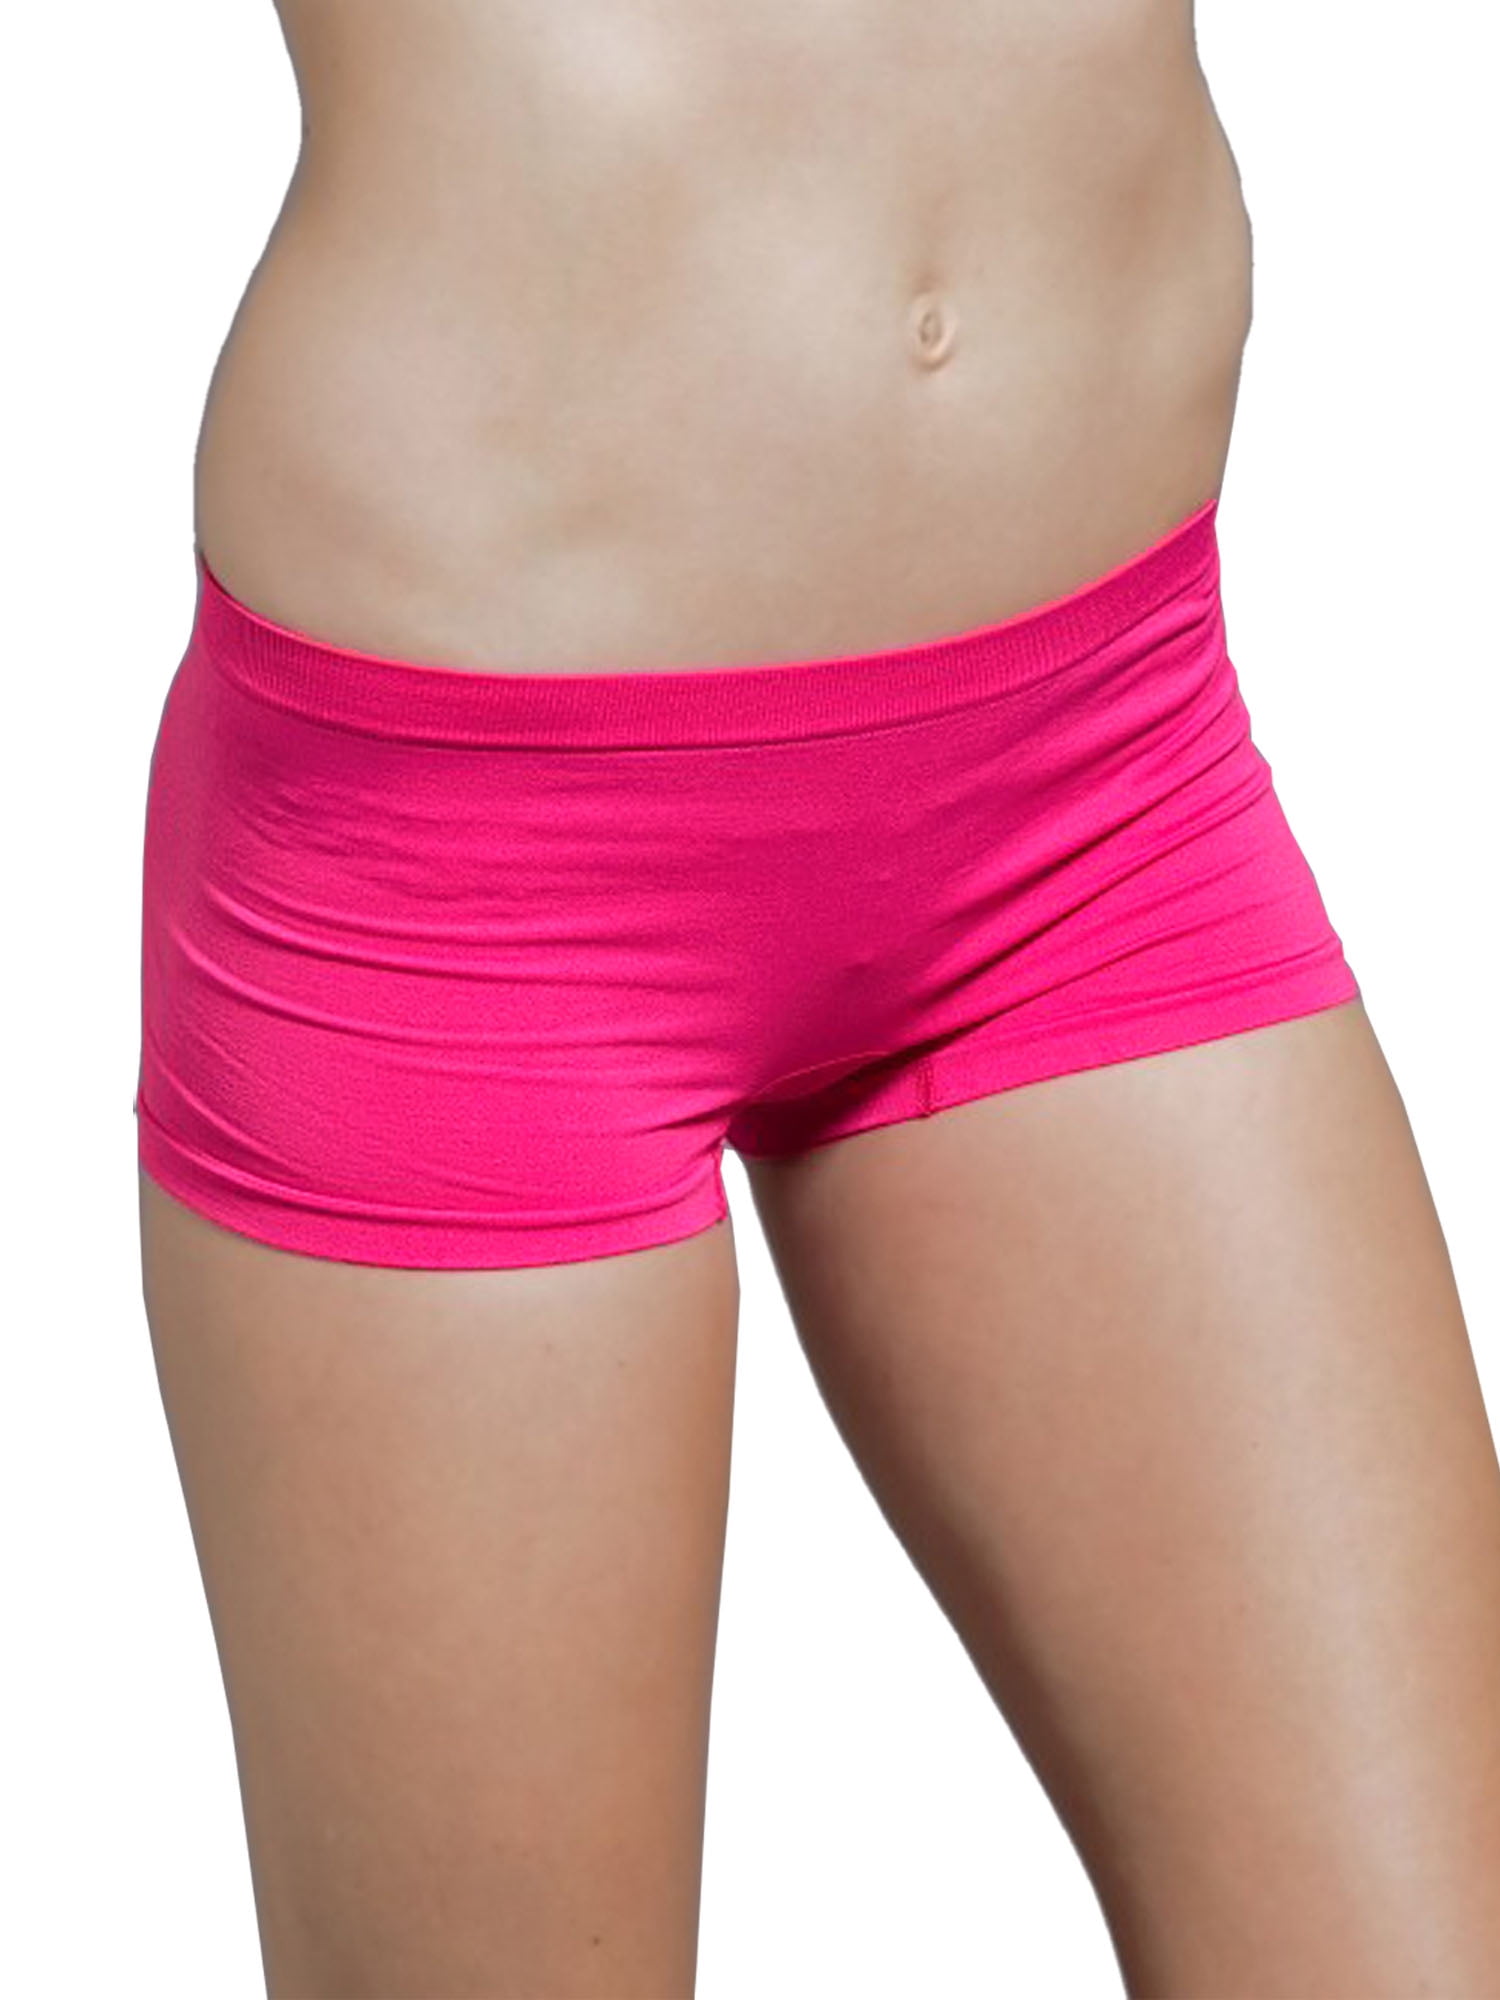 Hot Sale High Quality Very Soft Kids Girls Women Adult Underwear Shorts Nude  Dance Panties Dance Briefs - AliExpress